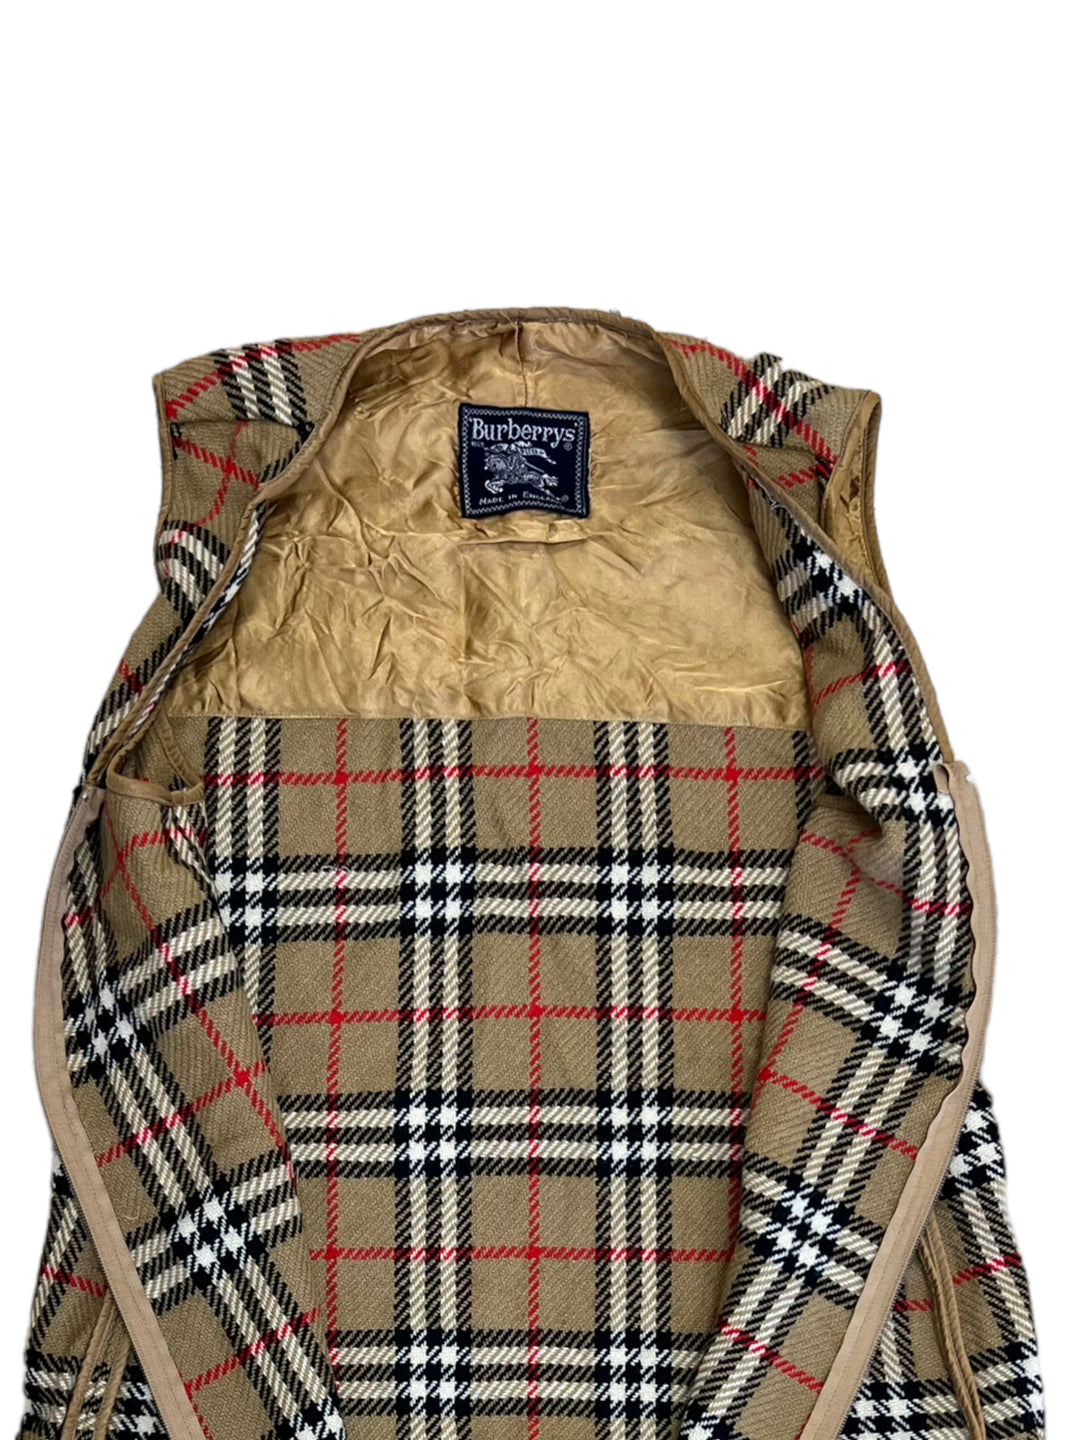 Burberry Nova Check Longline Vest Liner For Coat Women’s Medium